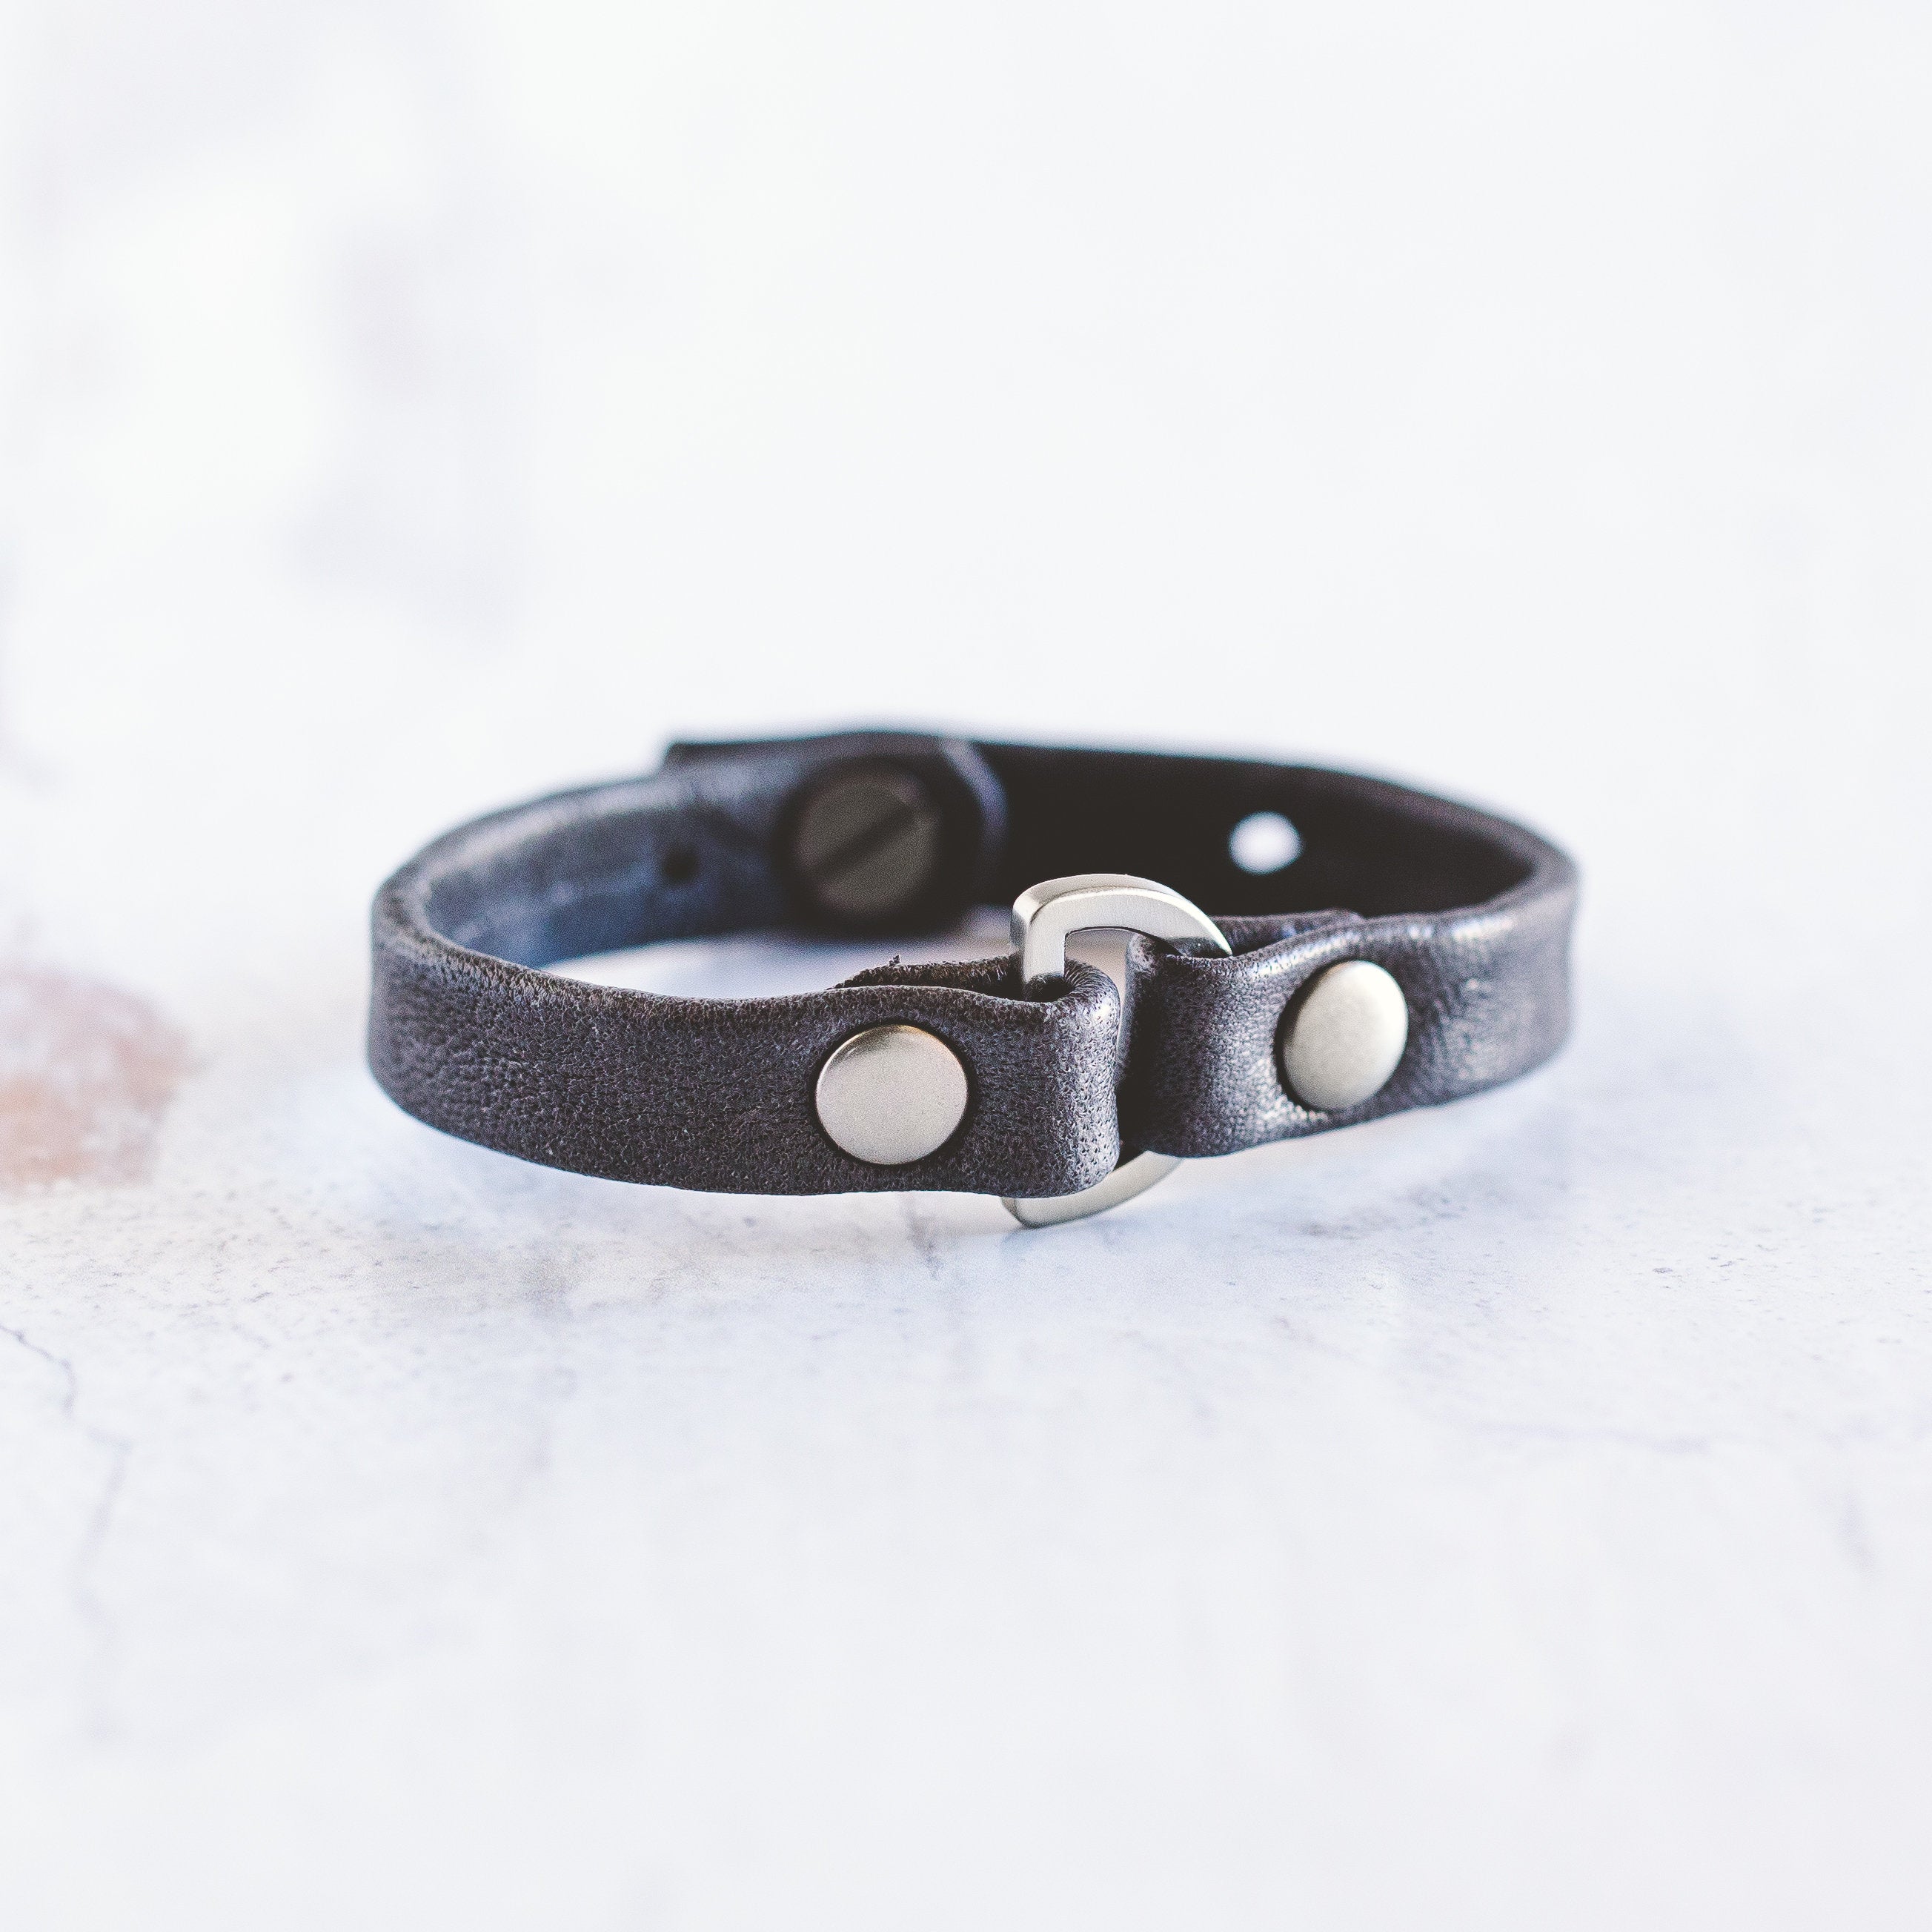 Handmade women jewelry bracelets cuff plating grey silver snakeskin